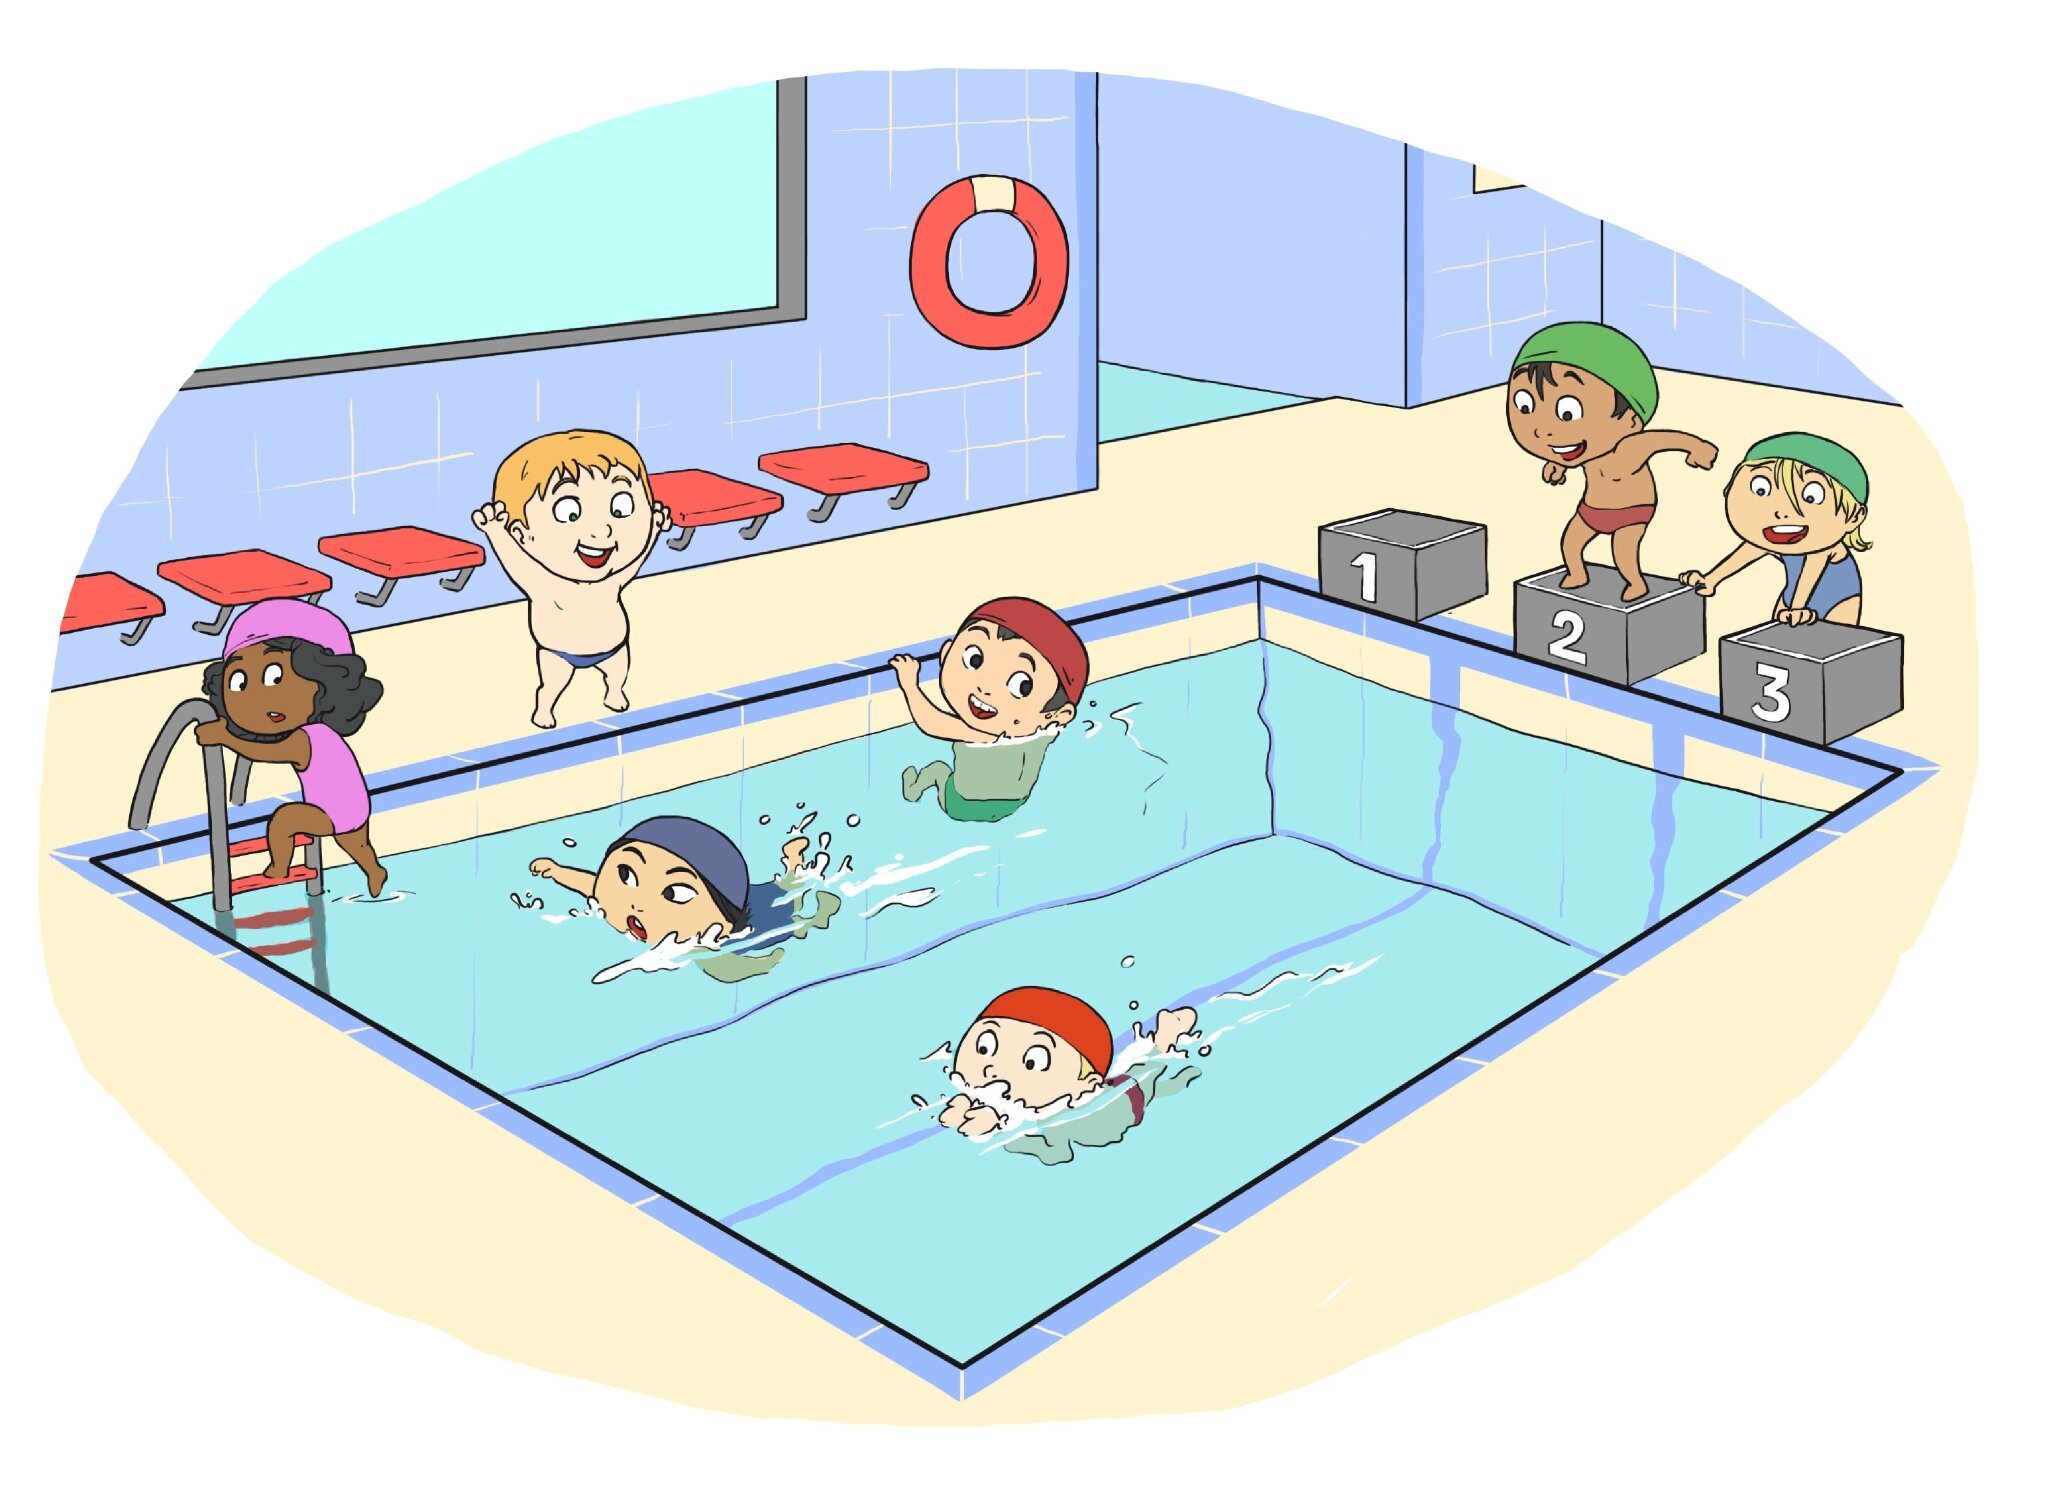 RÃ©sultat de recherche d'images pour "piscine dessin"